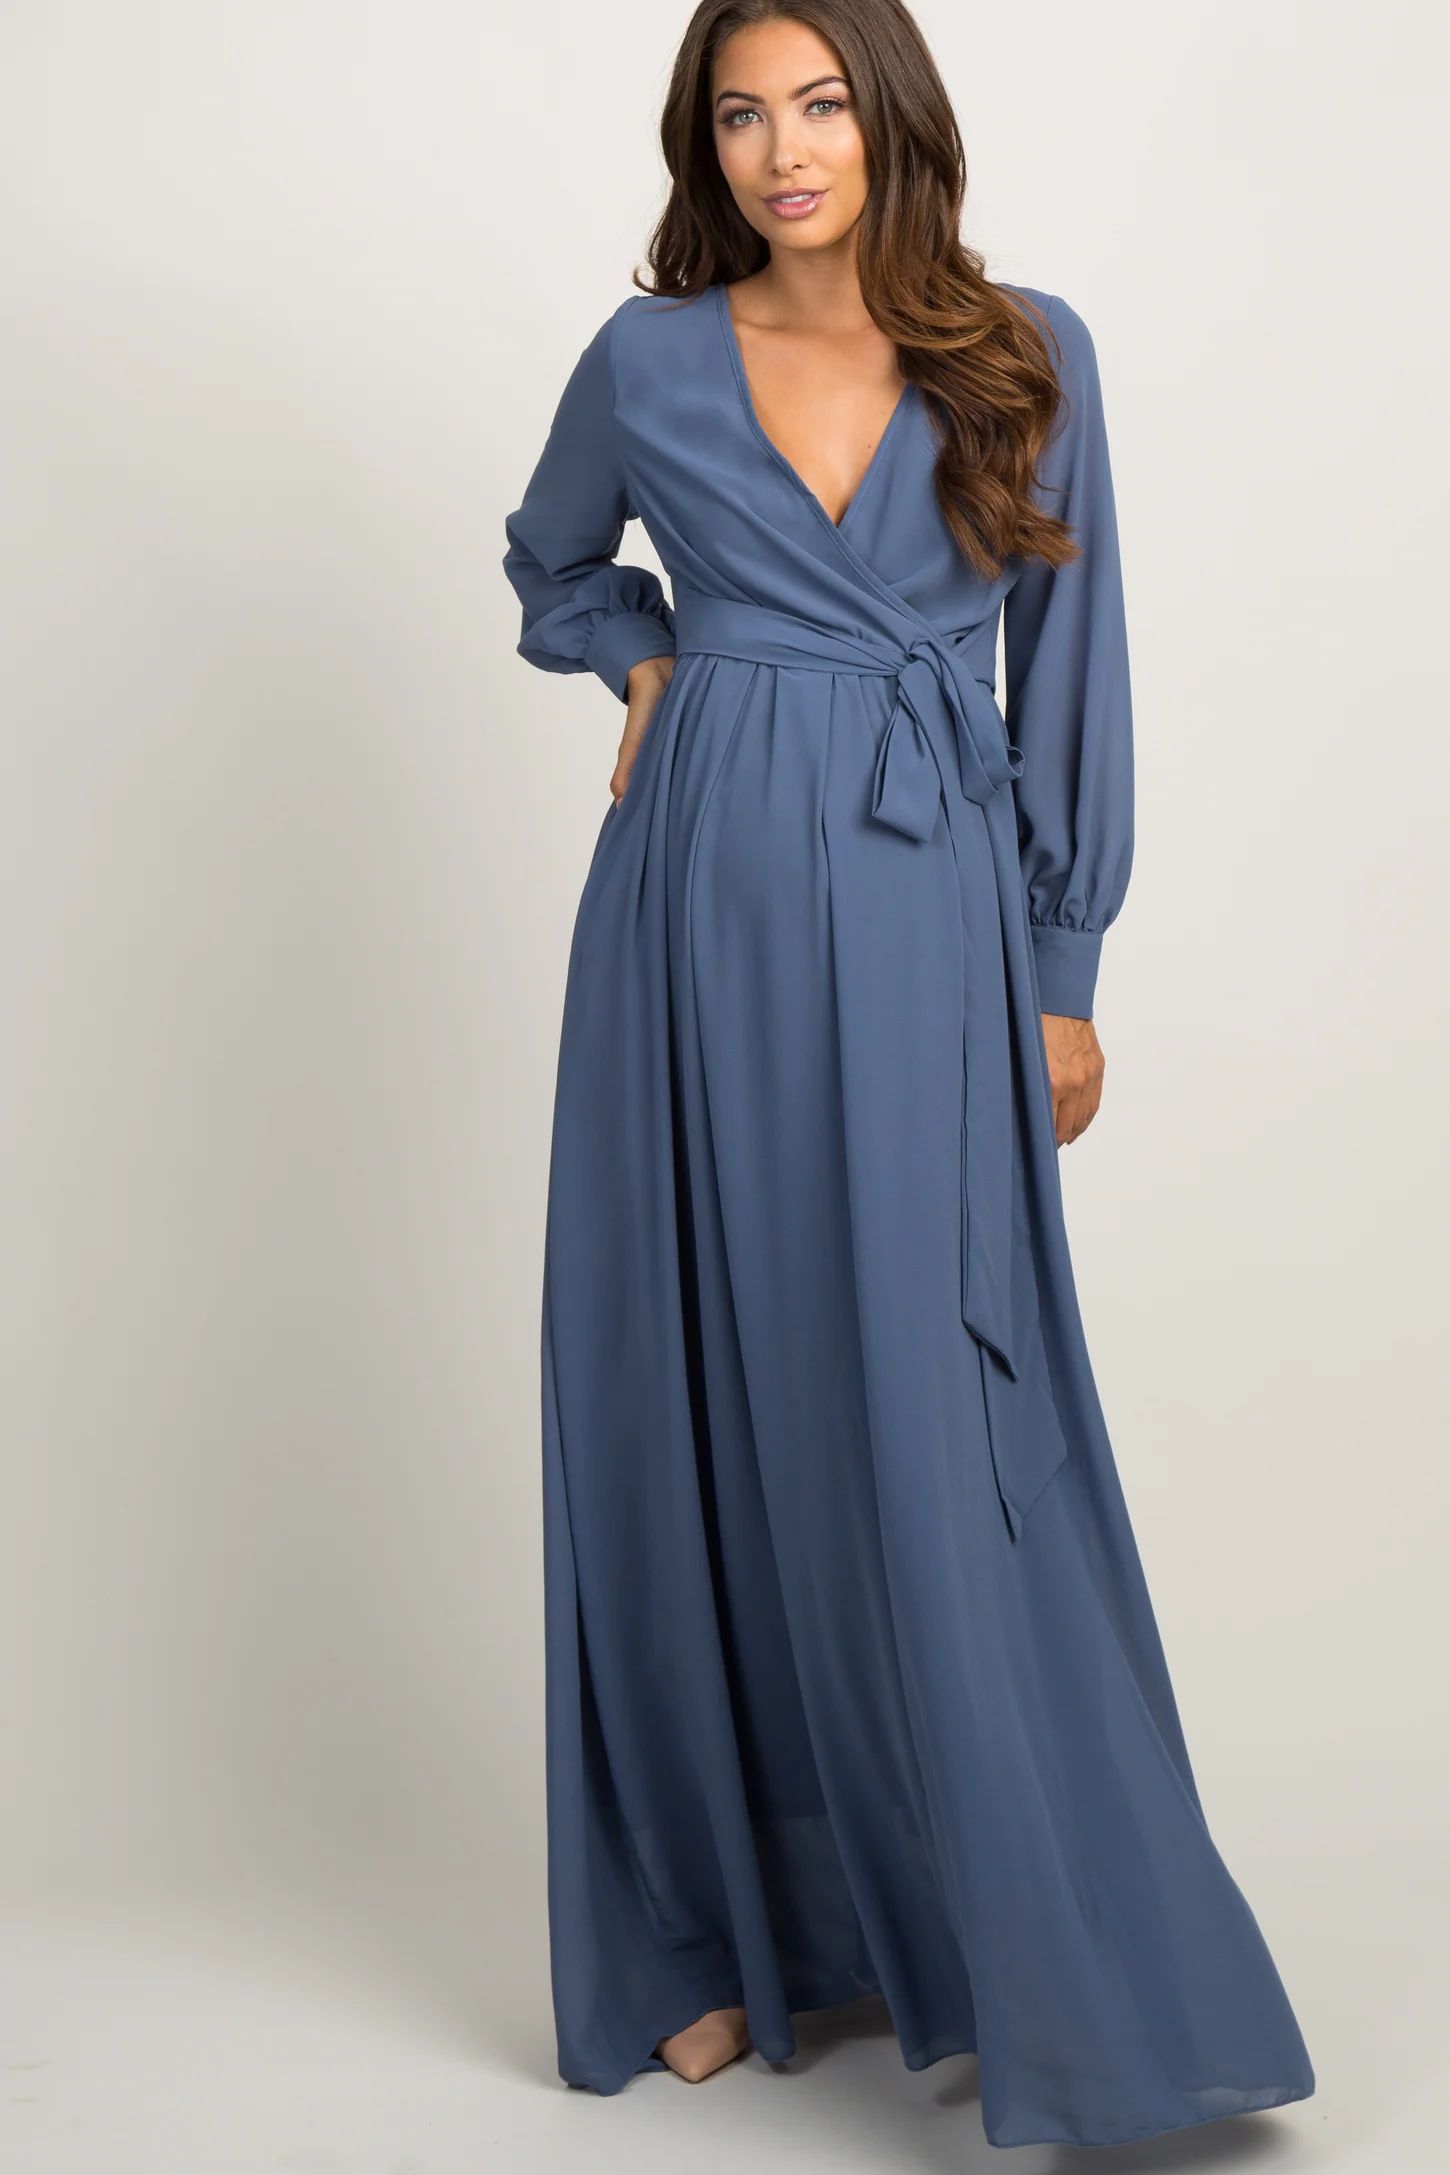 Blue Chiffon Long Sleeve Pleated Maternity Maxi Dress | PinkBlush Maternity